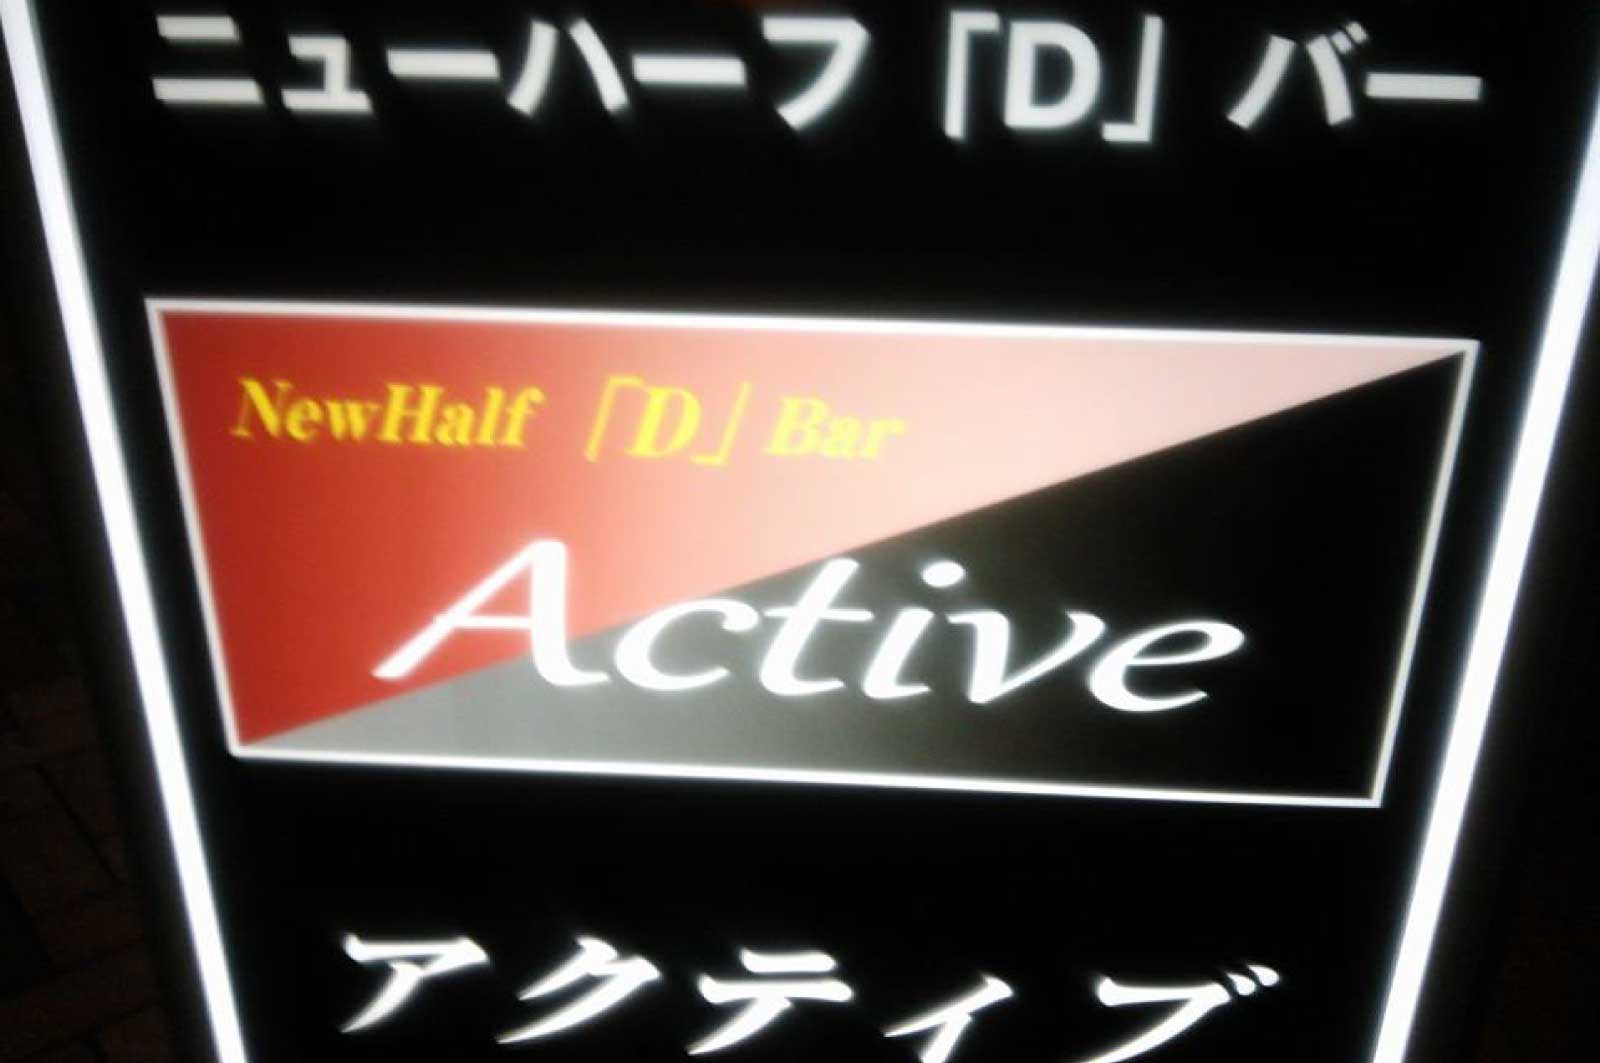 ニューハーフ「Ｄ」バー・Active